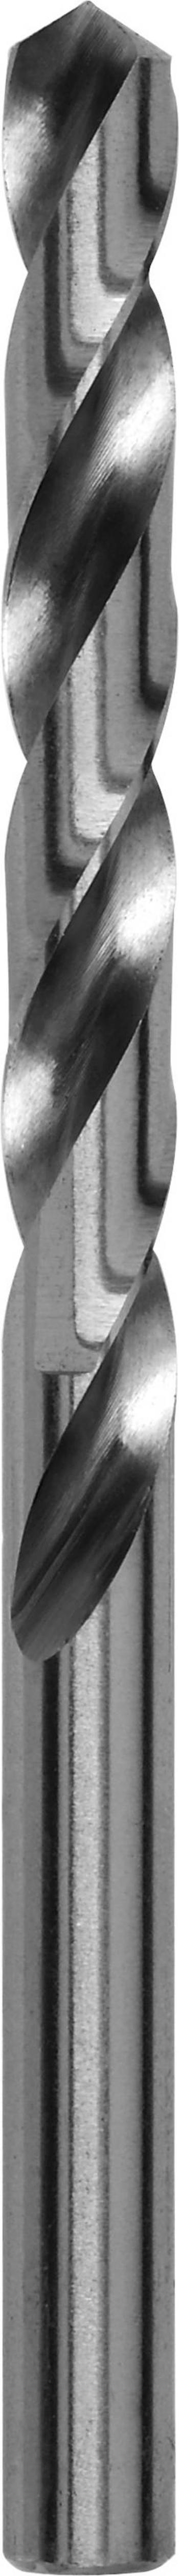 Kovový spirálový vrták Bosch Accessories 2609255042, 4.2 mm, 75 mm, HSS, 1 ks